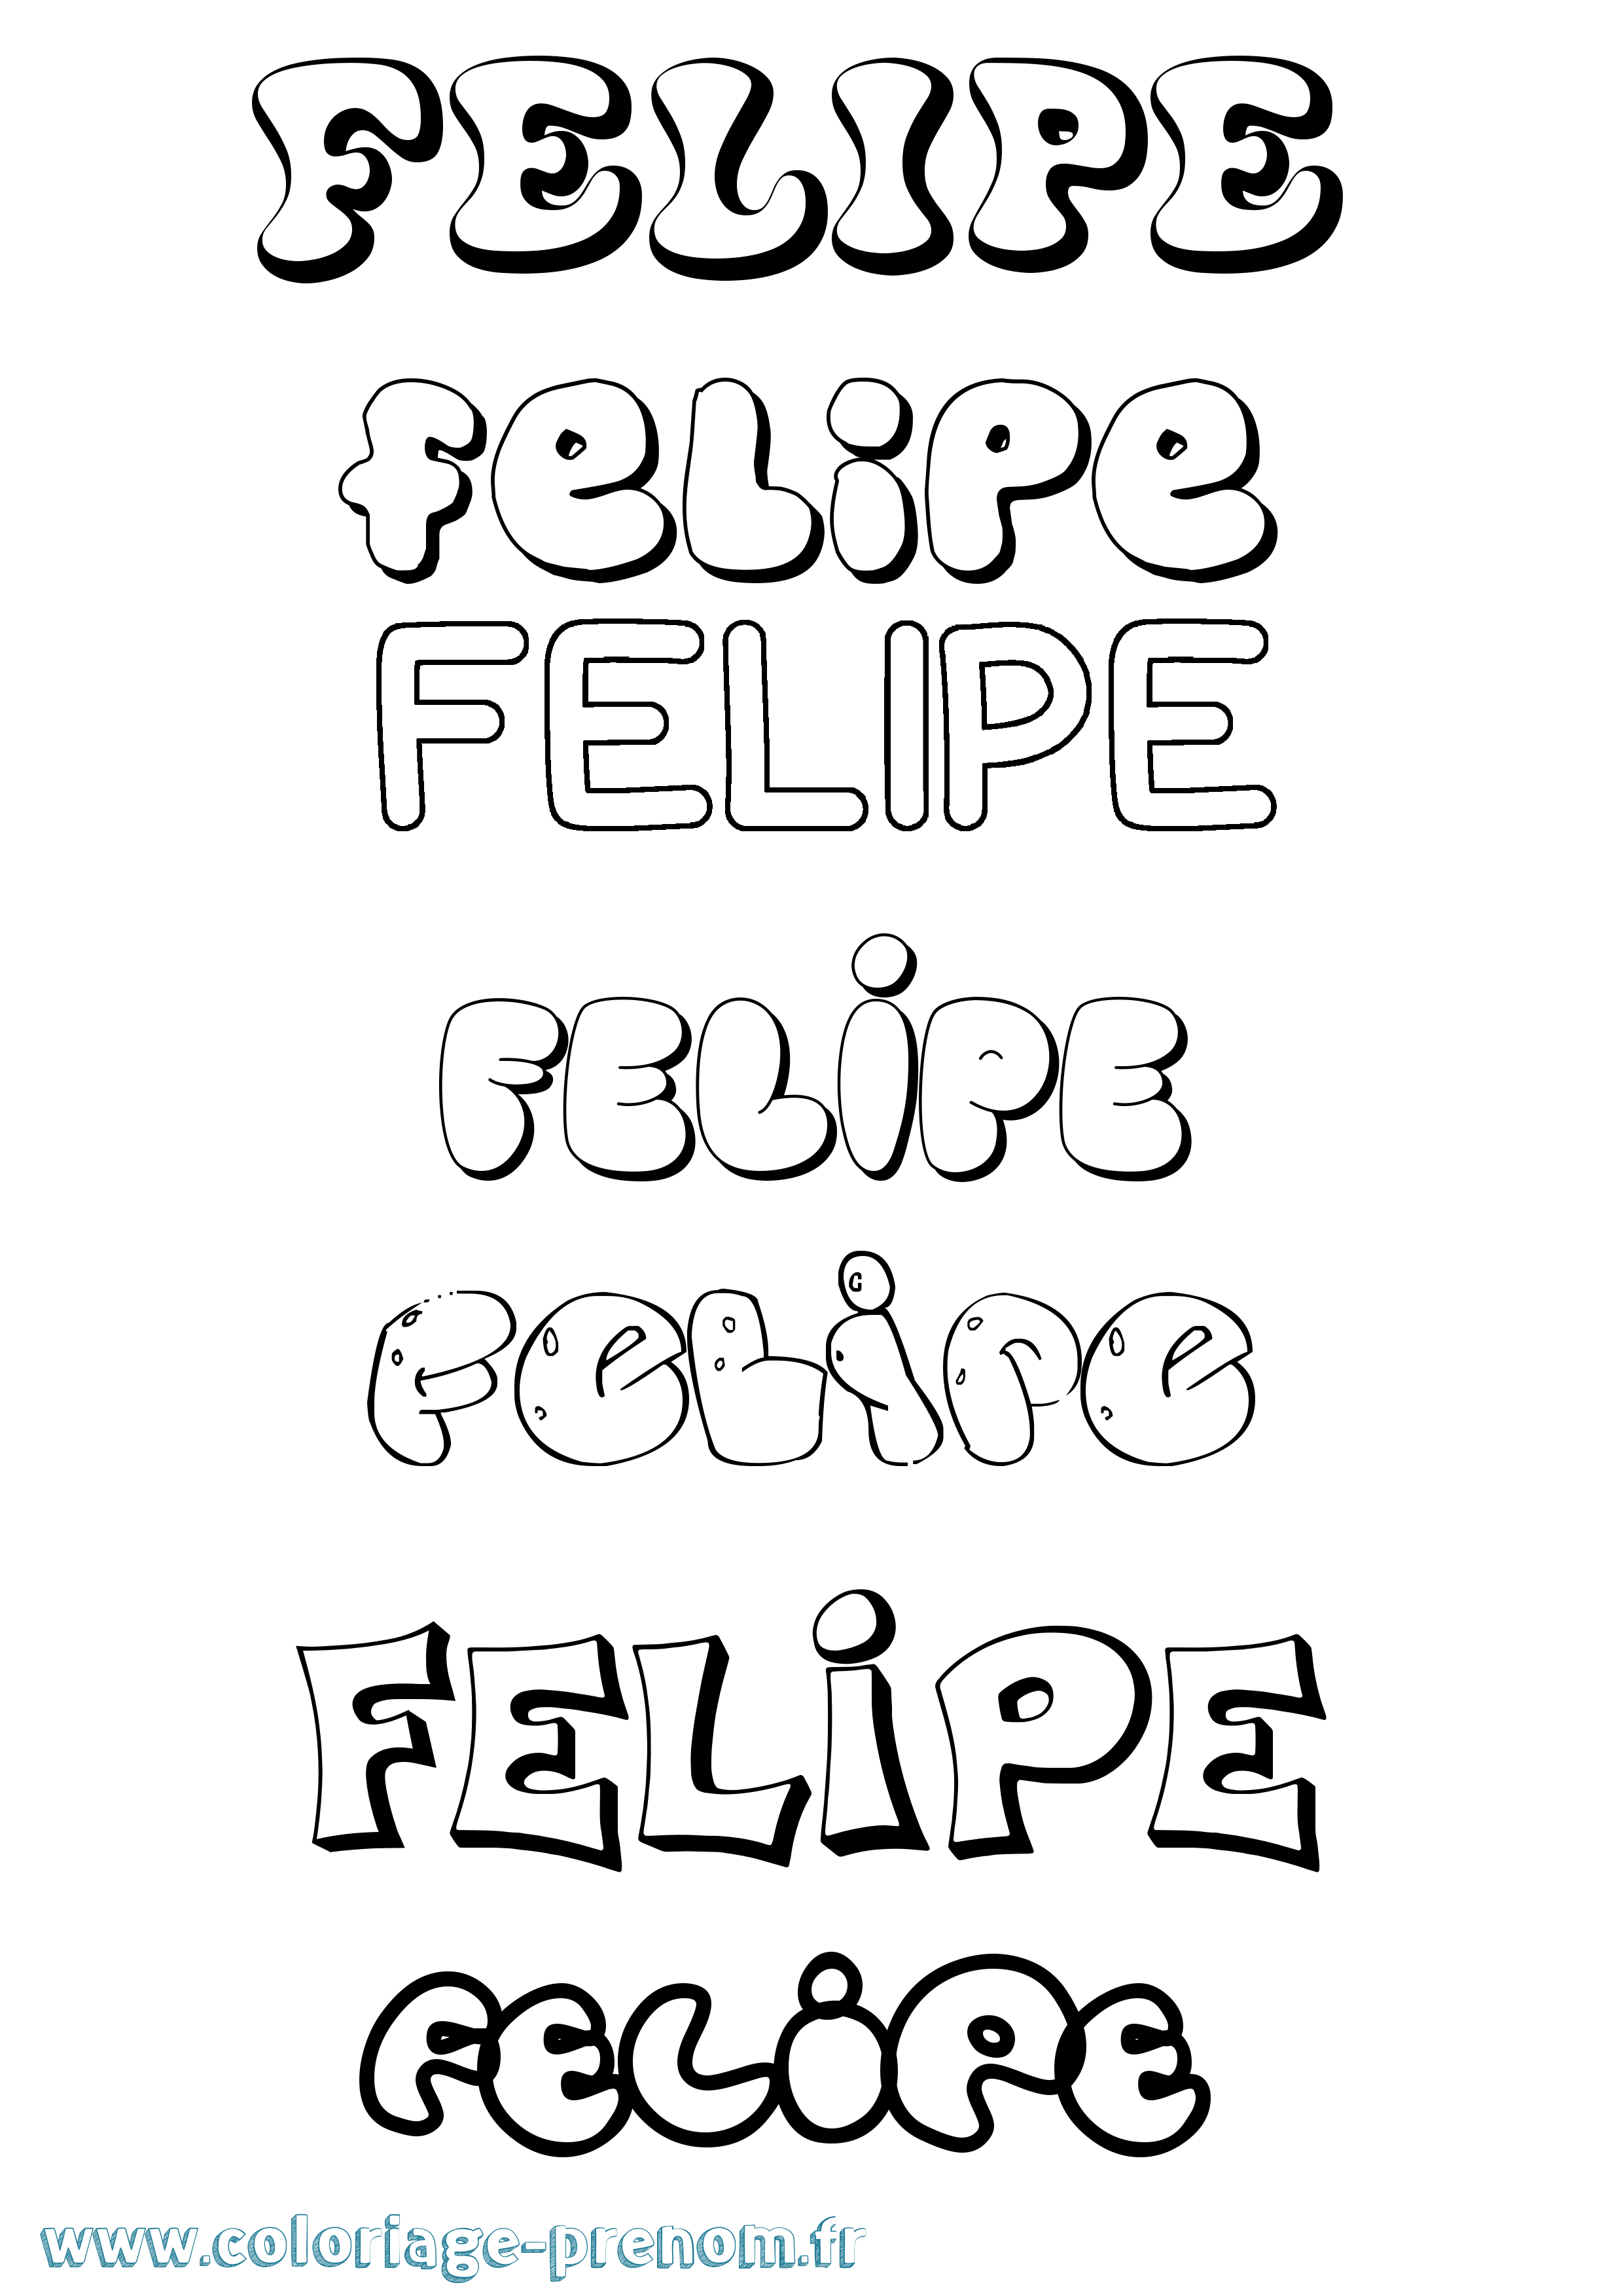 Coloriage prénom Felipe Bubble